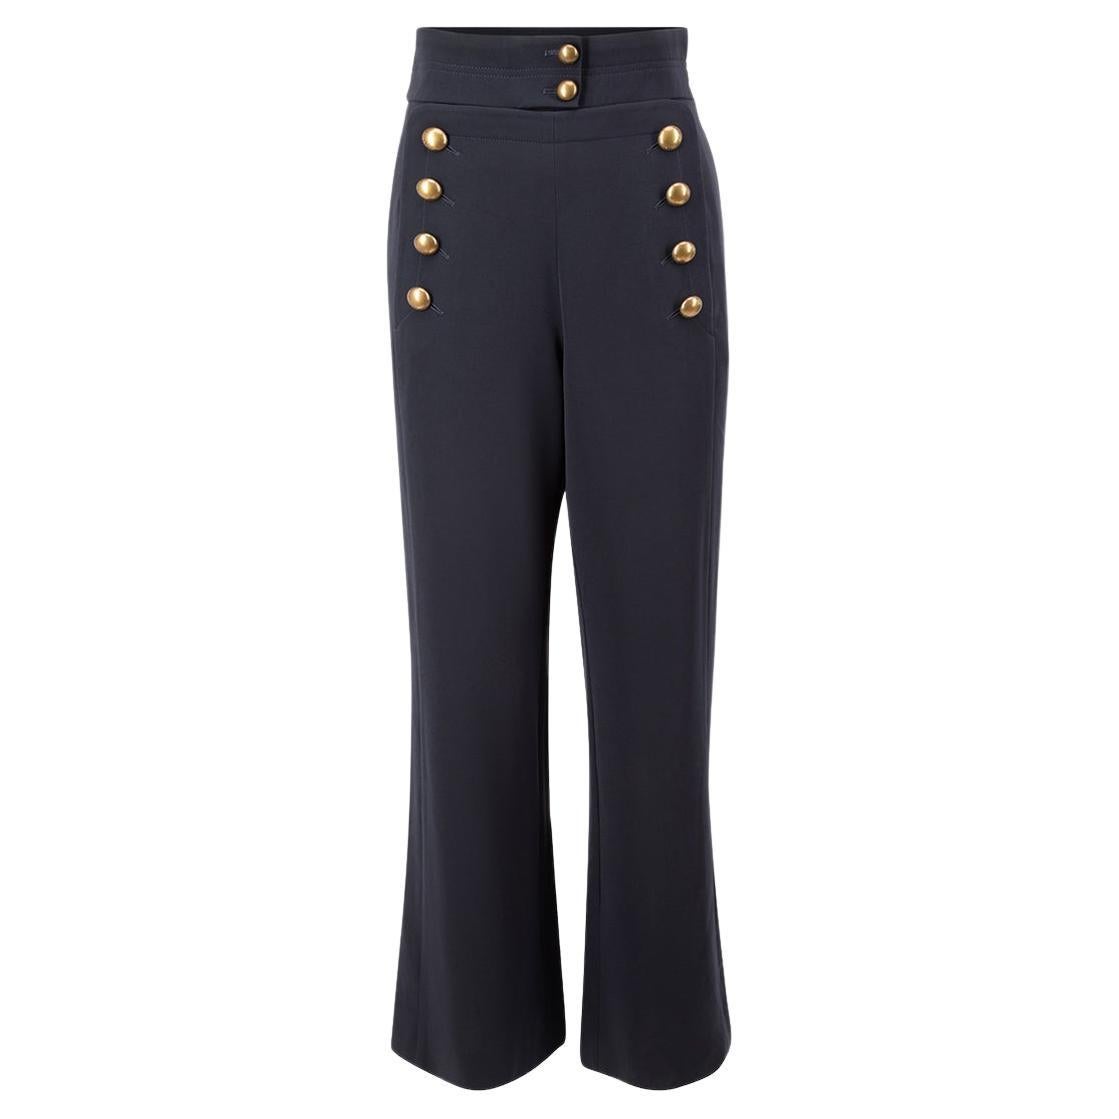 Chloé Women's Navy Button Detail High Waist Trousers